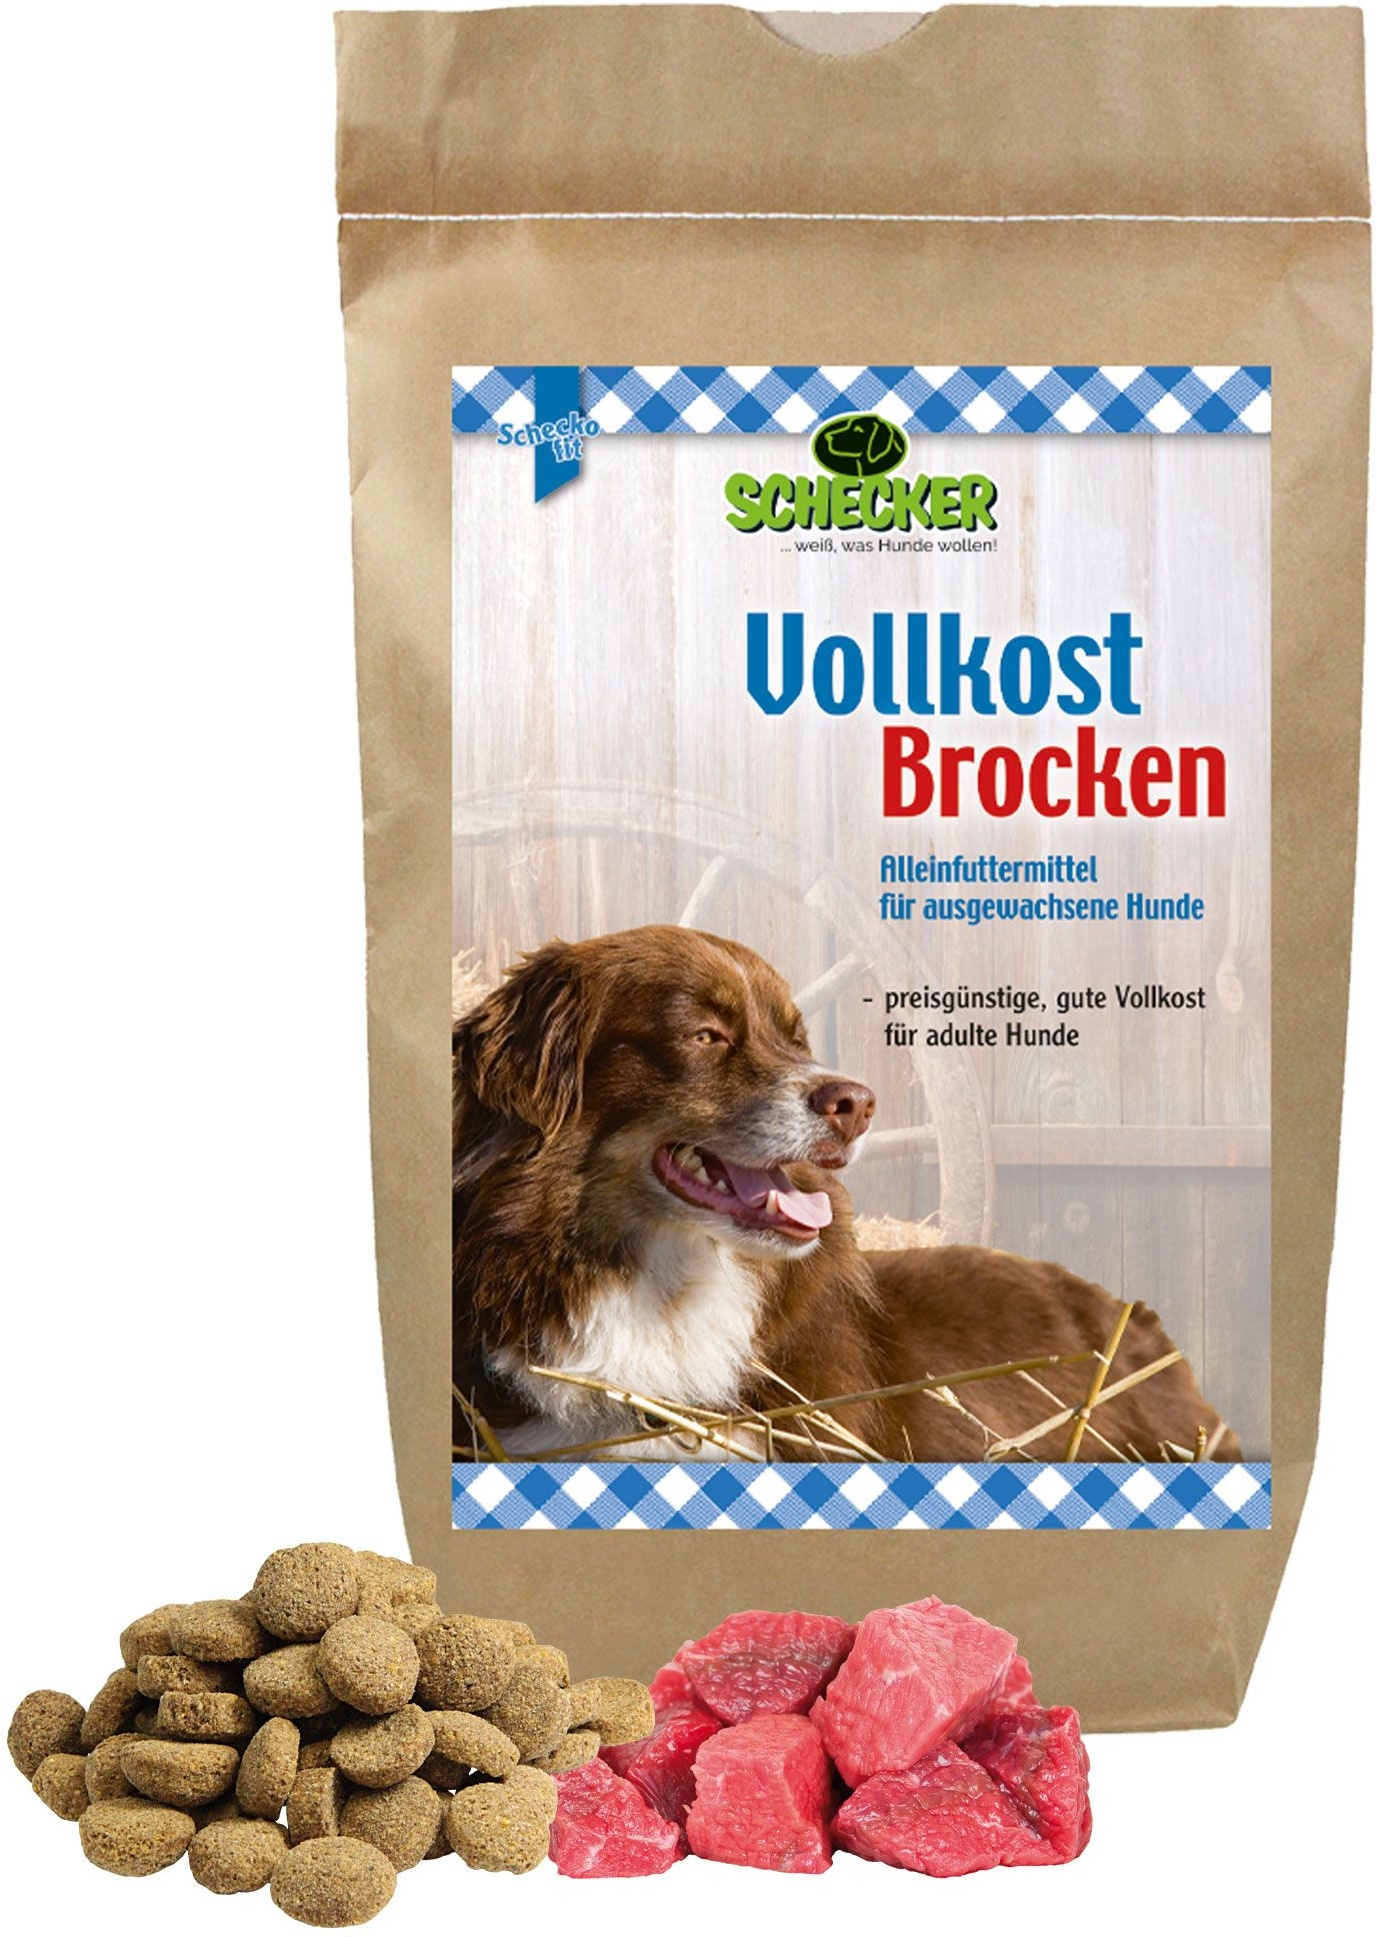 Schecker Vollkost Brocken - für ausgewachsene Hunde ohne besondere Ansprüche Futter 3 kg